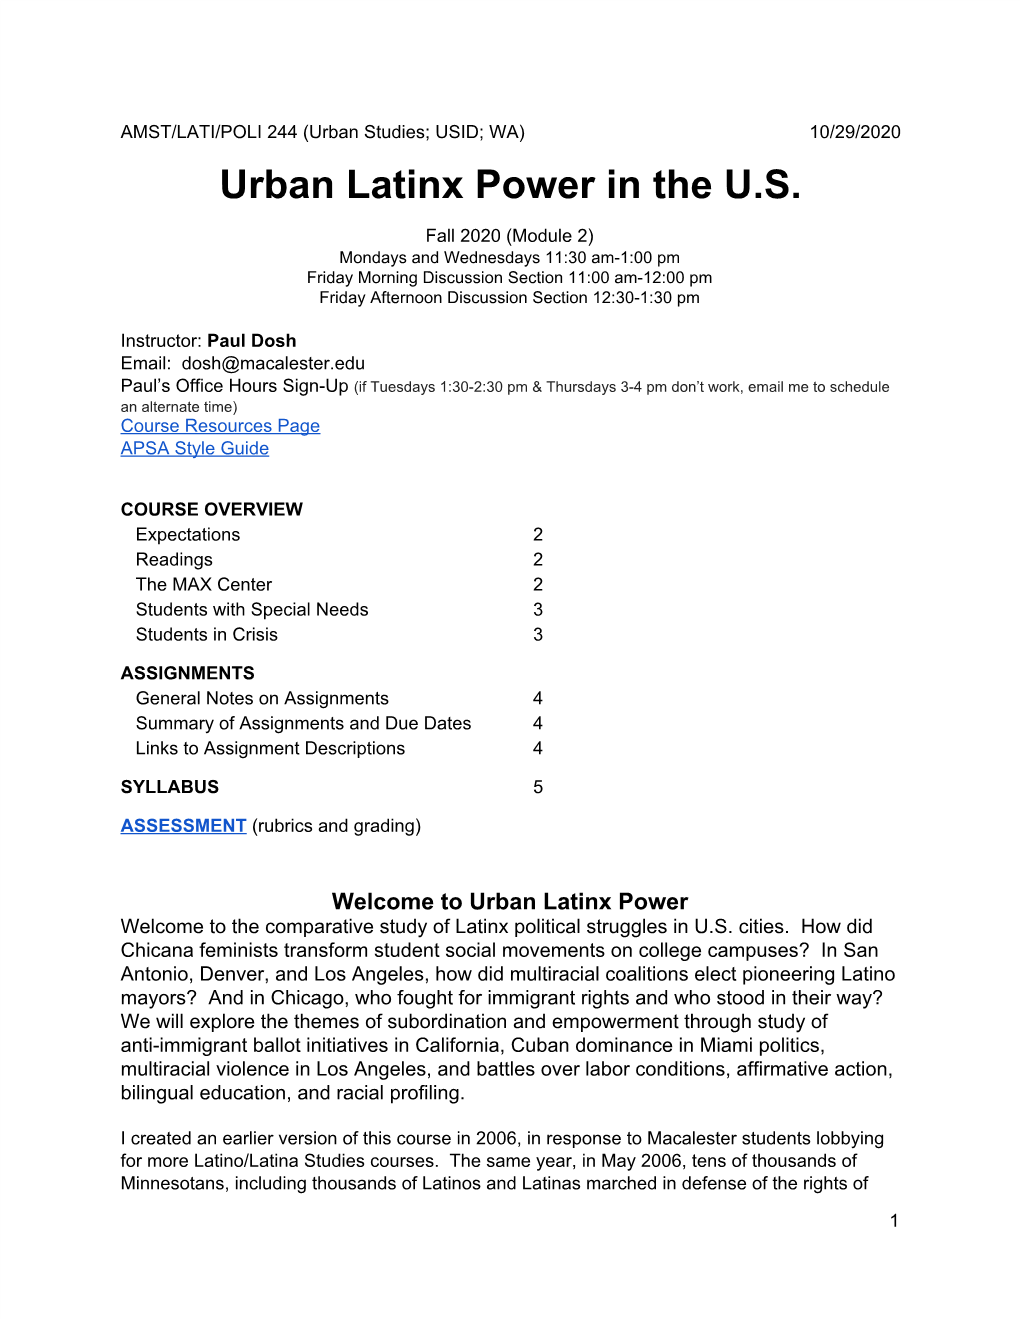 Urban Latinx Power in the U.S. (ULP) (Fall 2020)